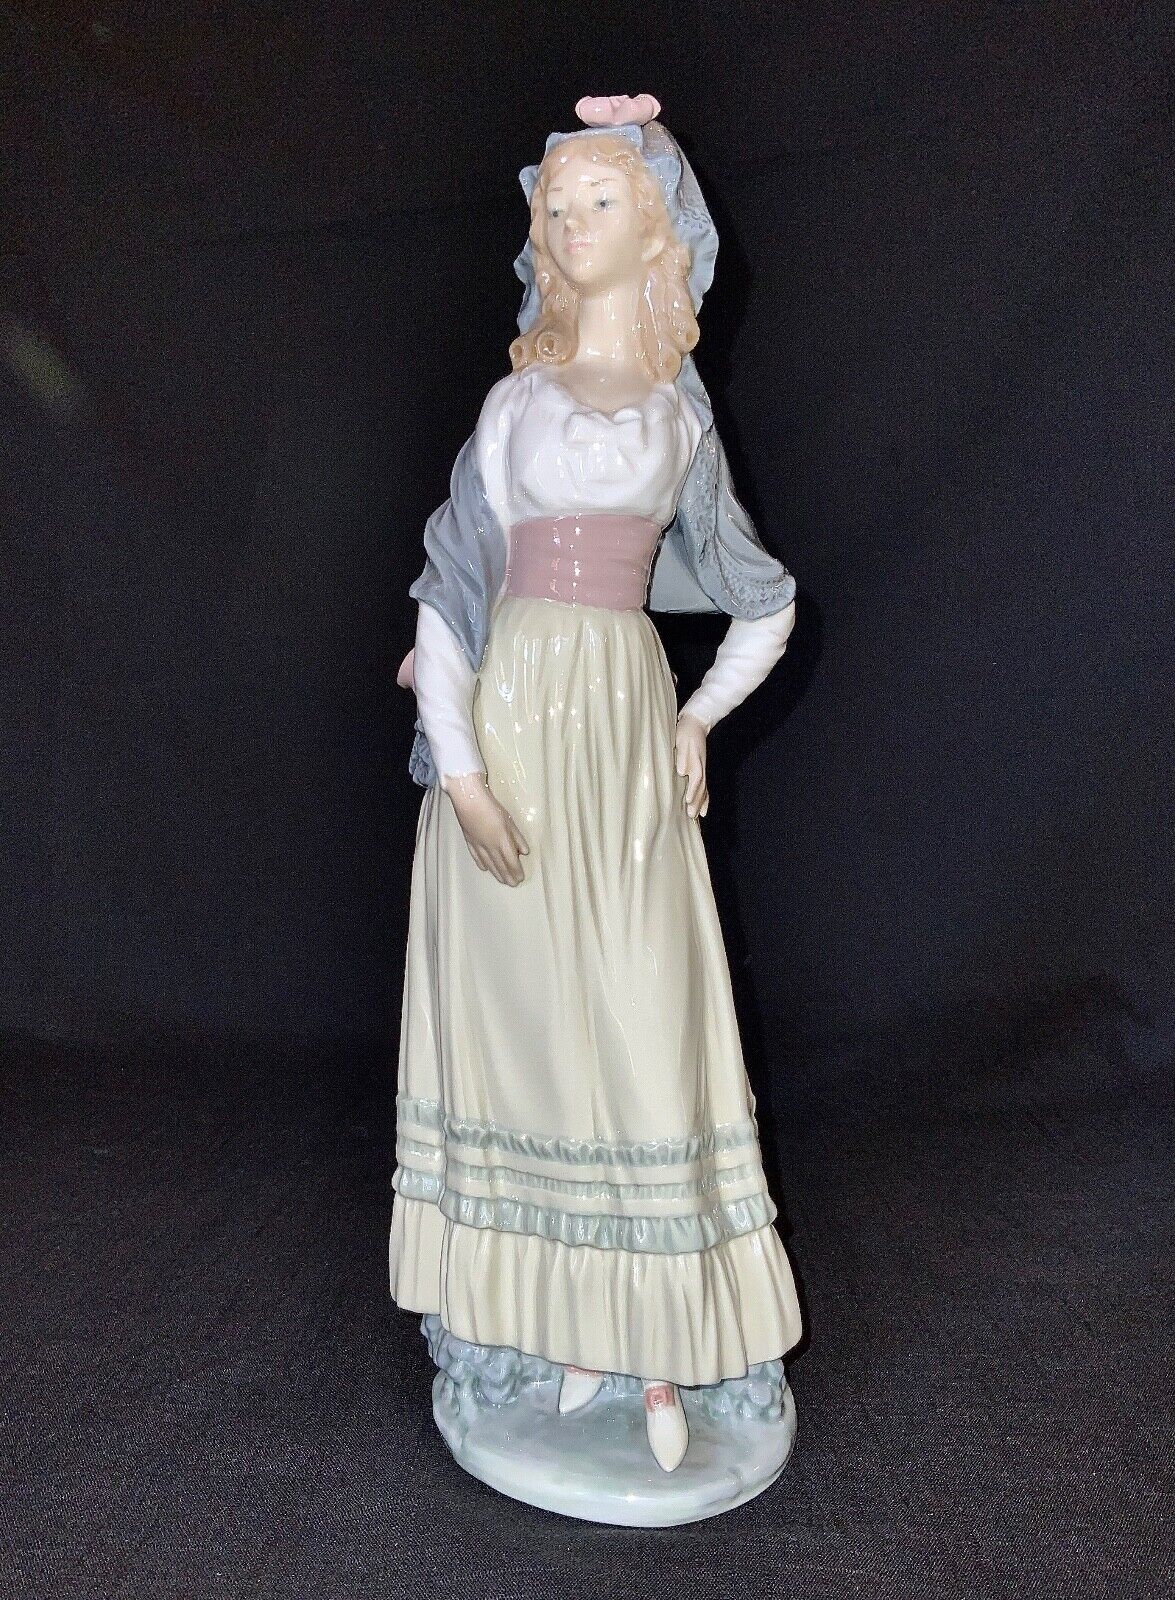 Lladro Goya Lady Porcelain Figurine / #5125 V. Martinez Dama Goyesca 12 1/4